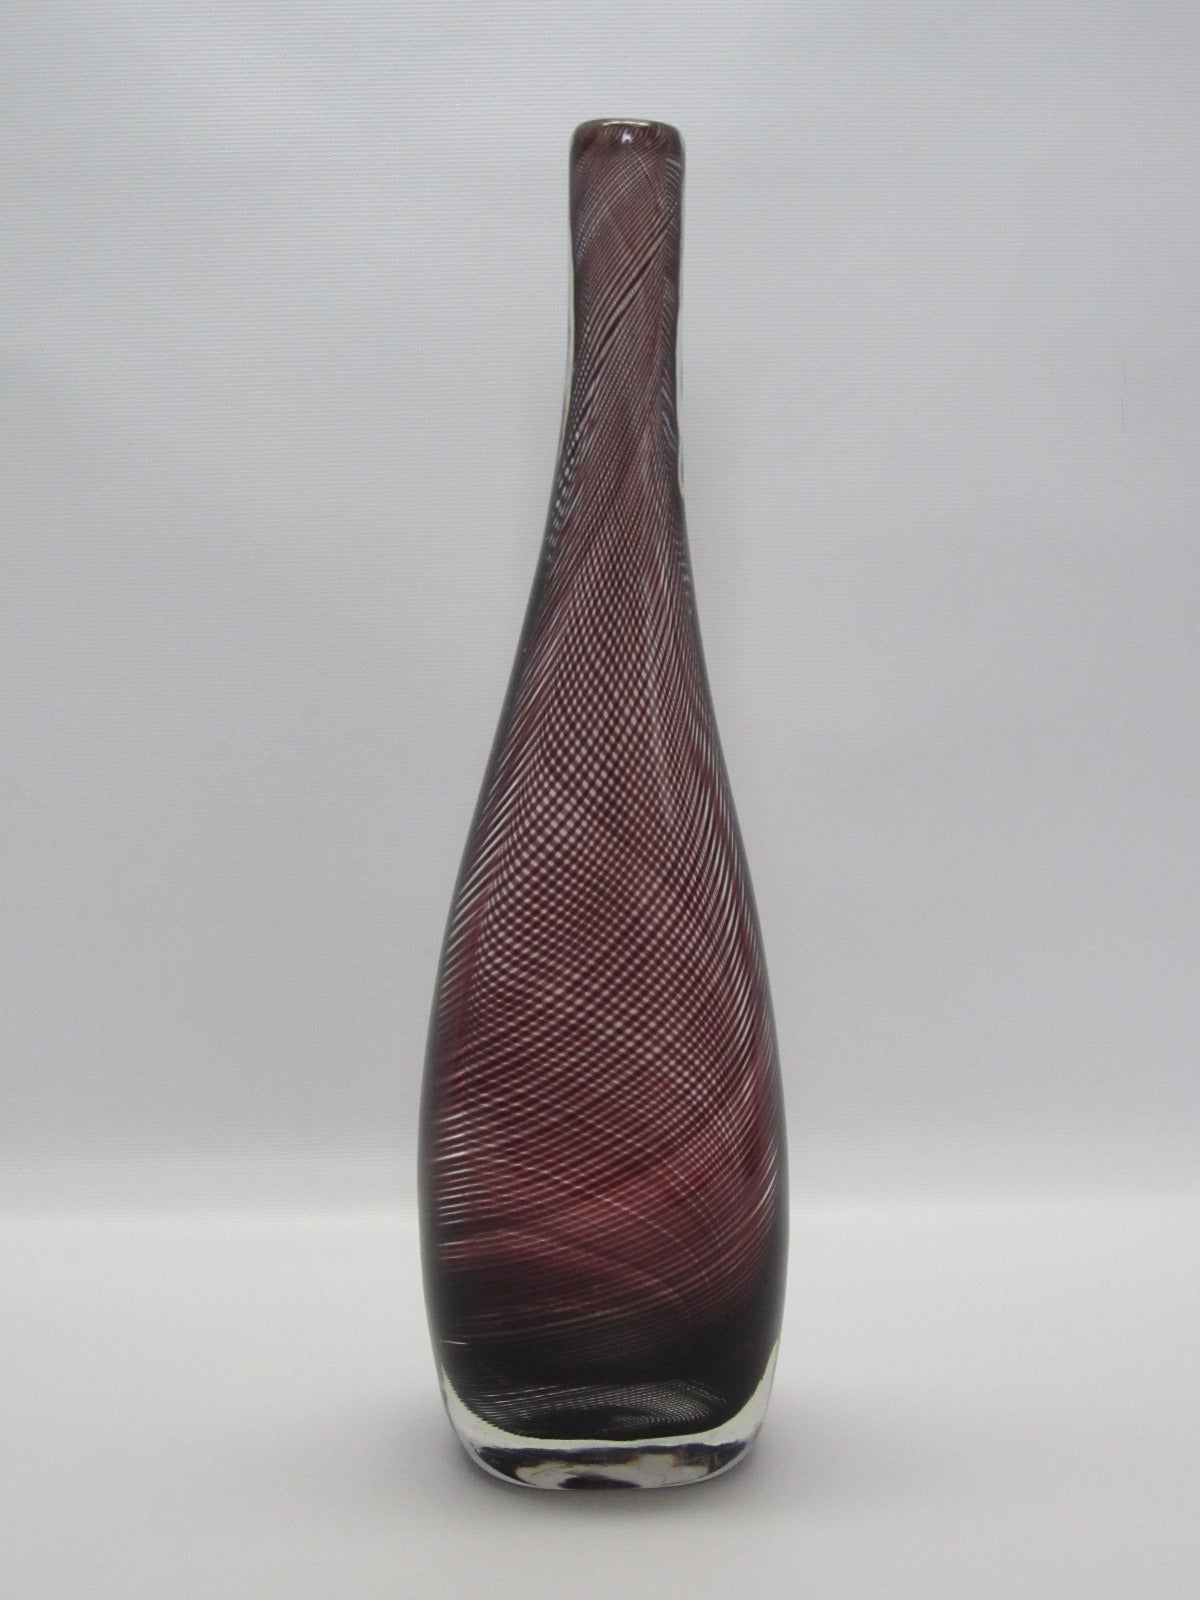 Exquisite tall neck handblown striped vase with original sticker on bottom.